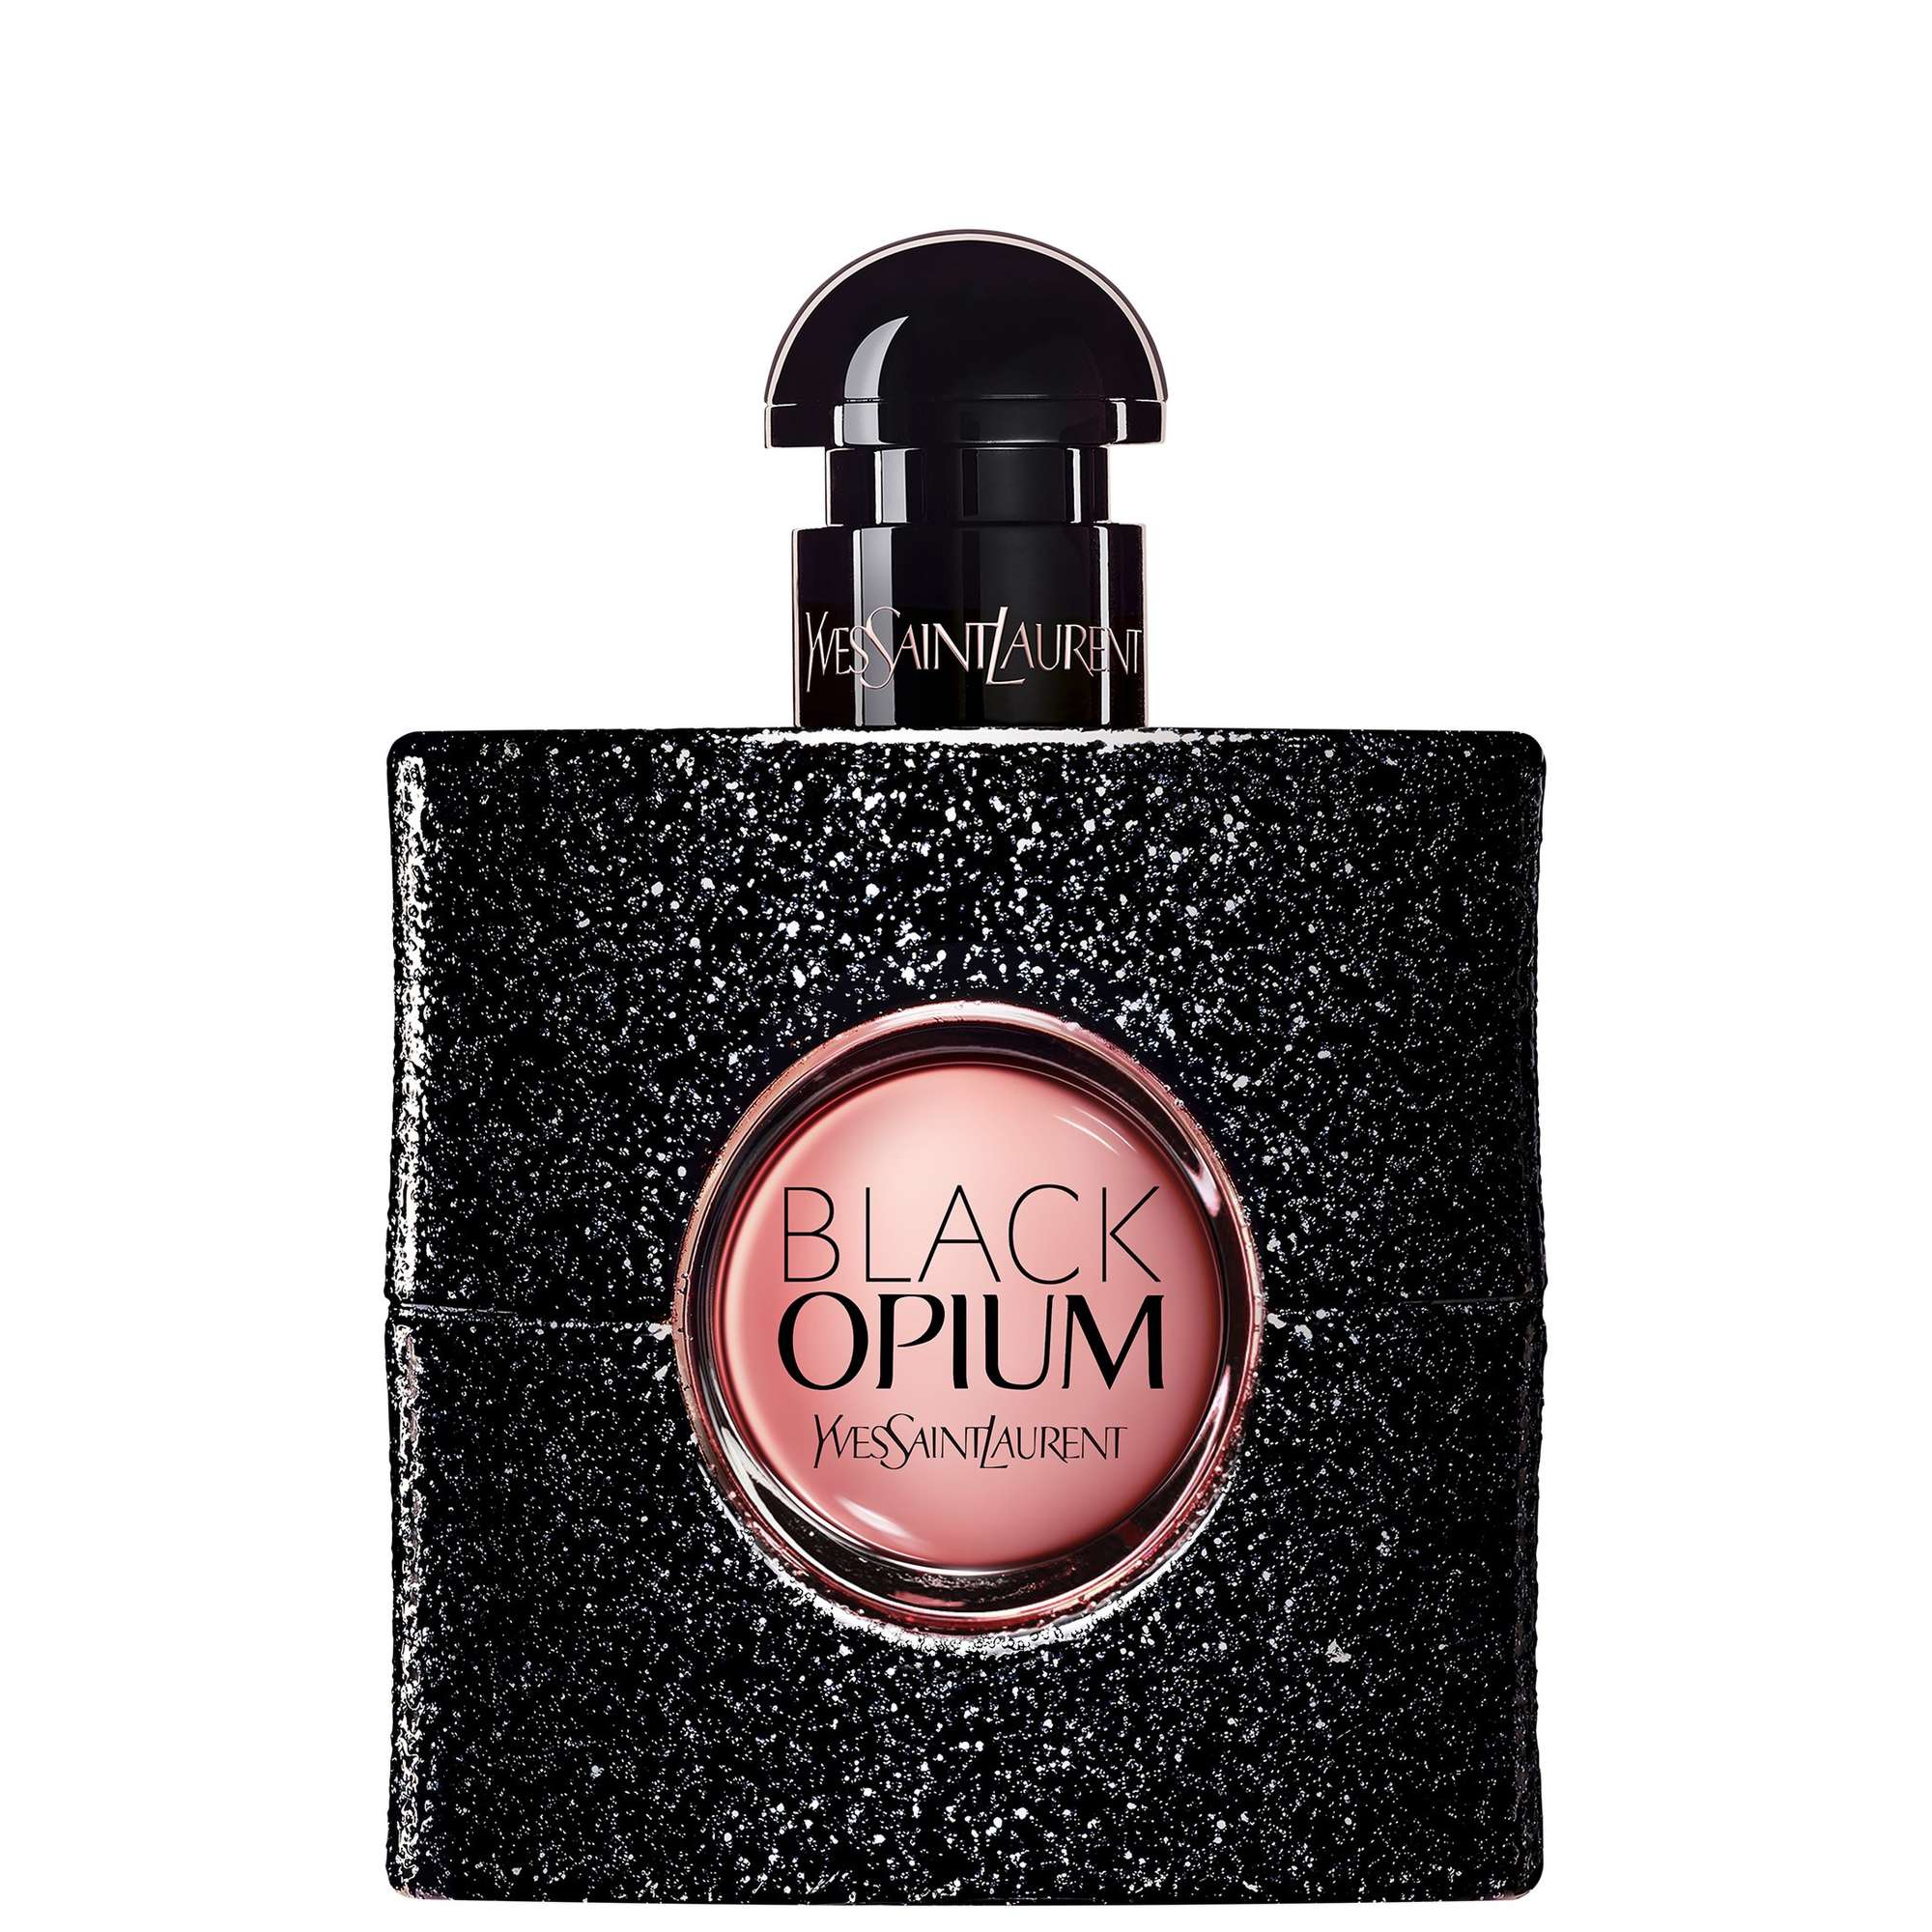 Photos - Women's Fragrance Yves Saint Laurent Black Opium Eau de Parfum Spray 50ml 